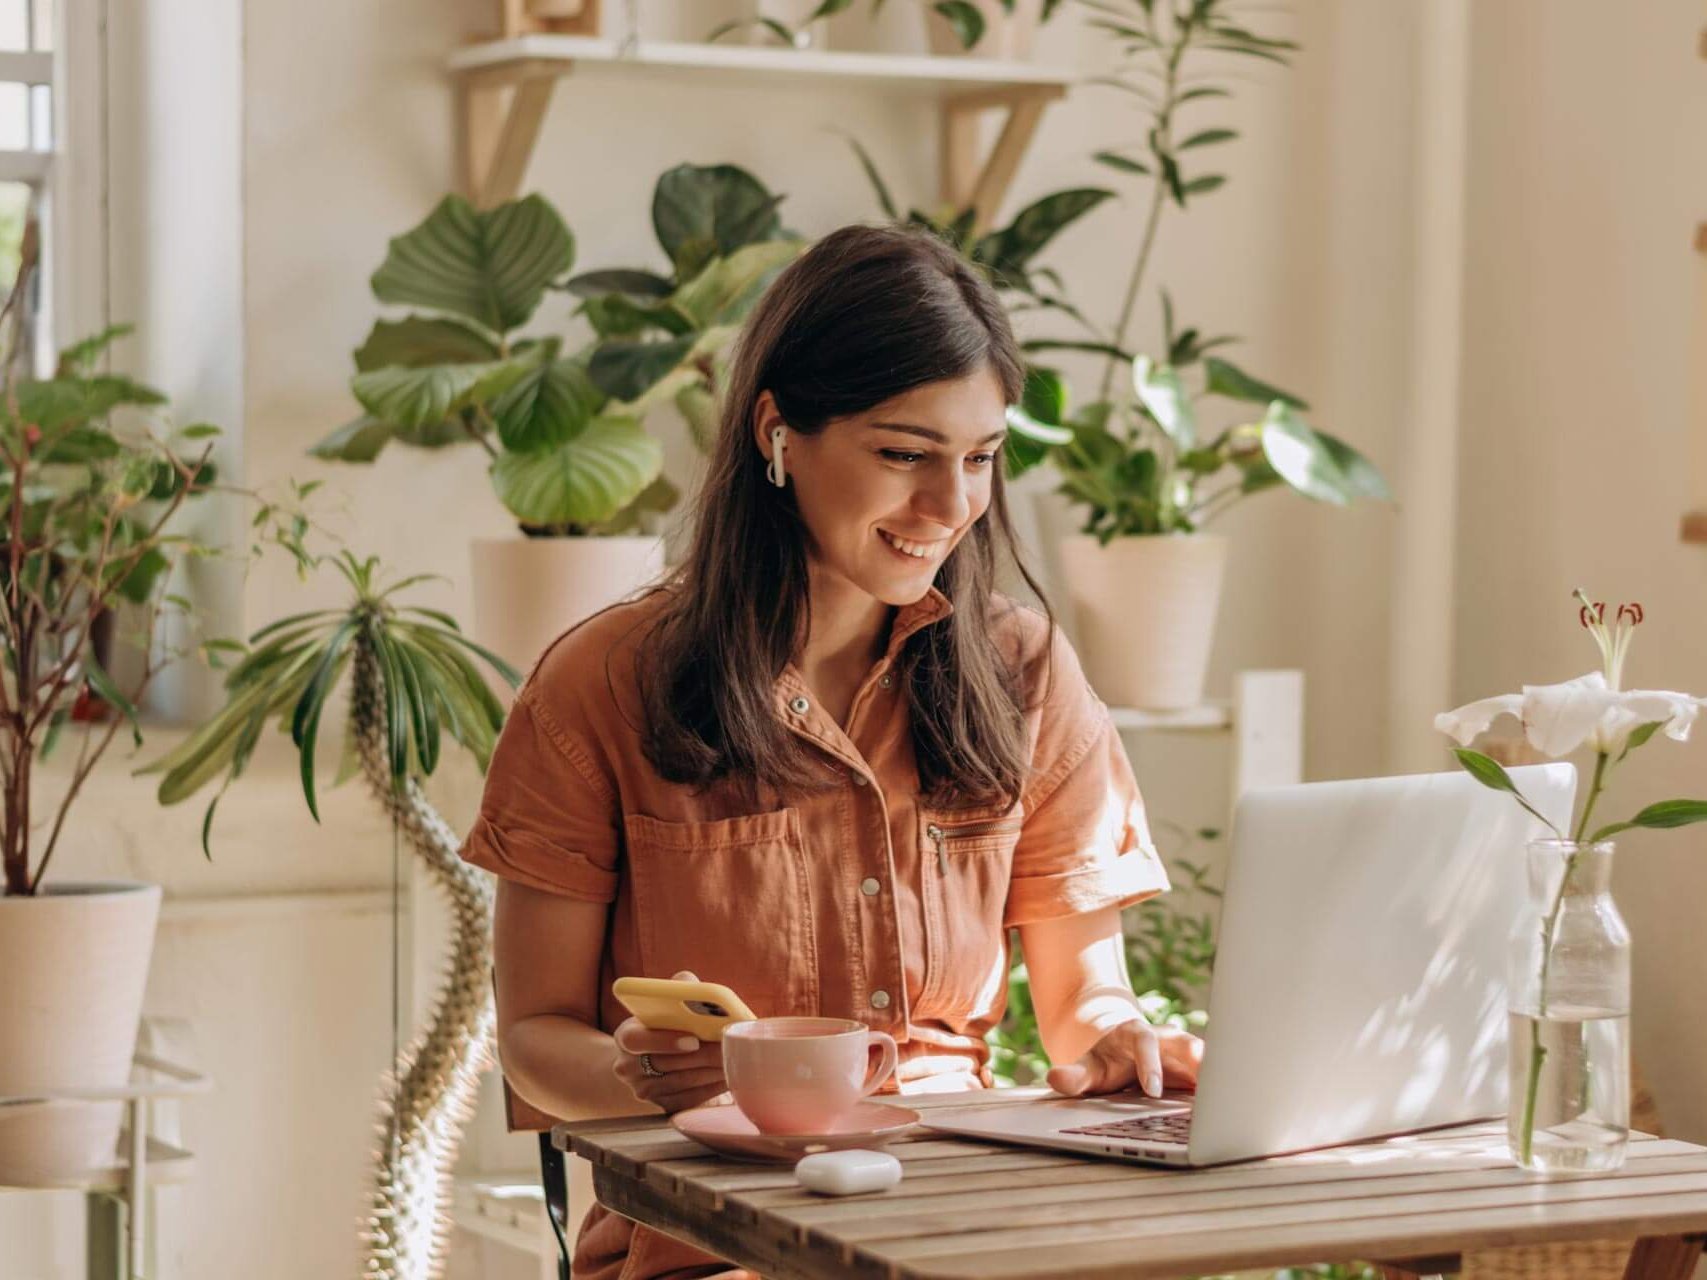 Eine Frau genießt eine Tasse Tee, während sie in einem gemütlichen, mit Pflanzen gefüllten Heimbüro an ihrem Laptop arbeitet.